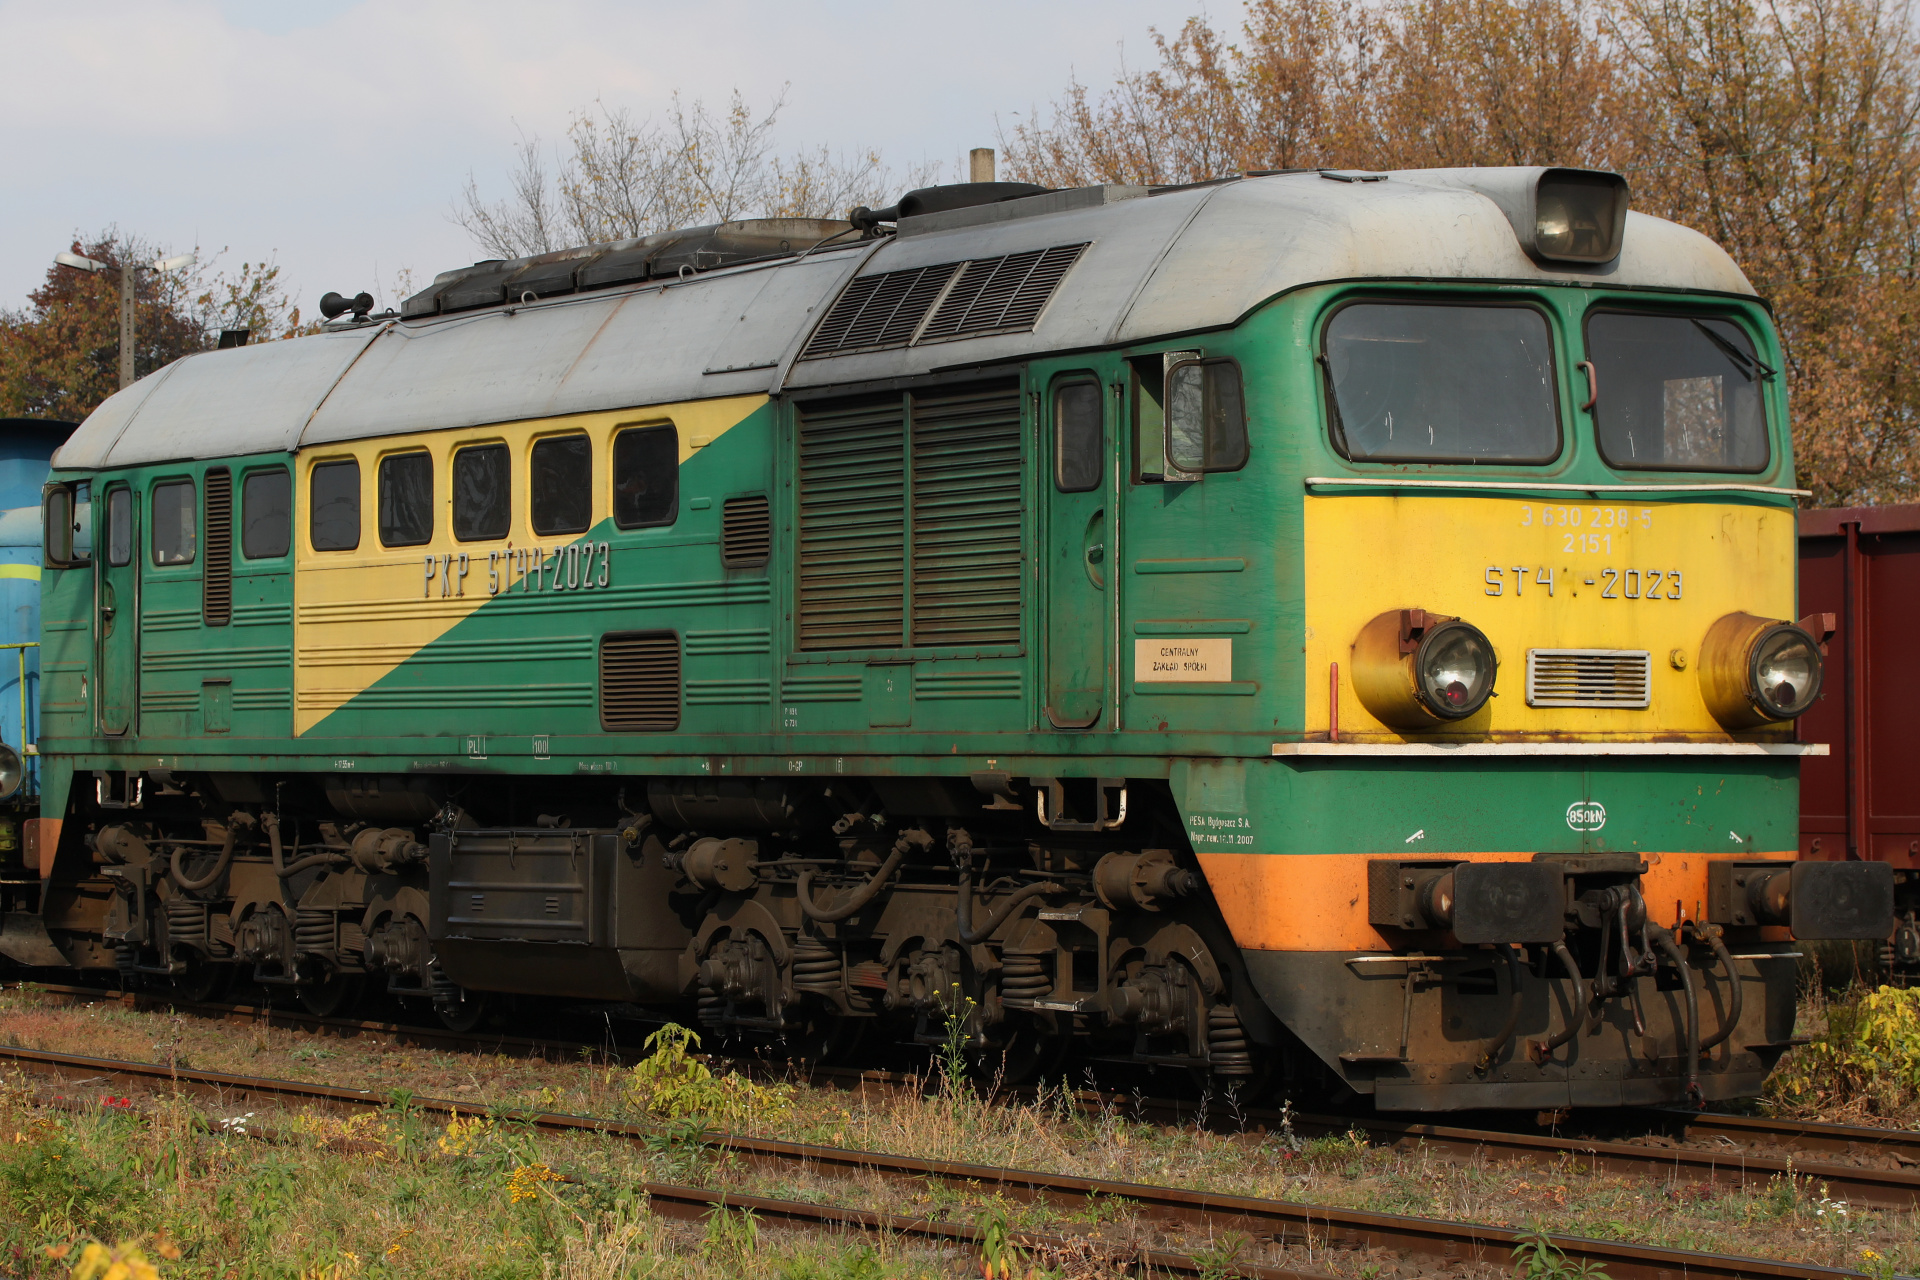 ST44-2023 (Pojazdy » Pociągi i lokomotywy » ЛТЗ M62)